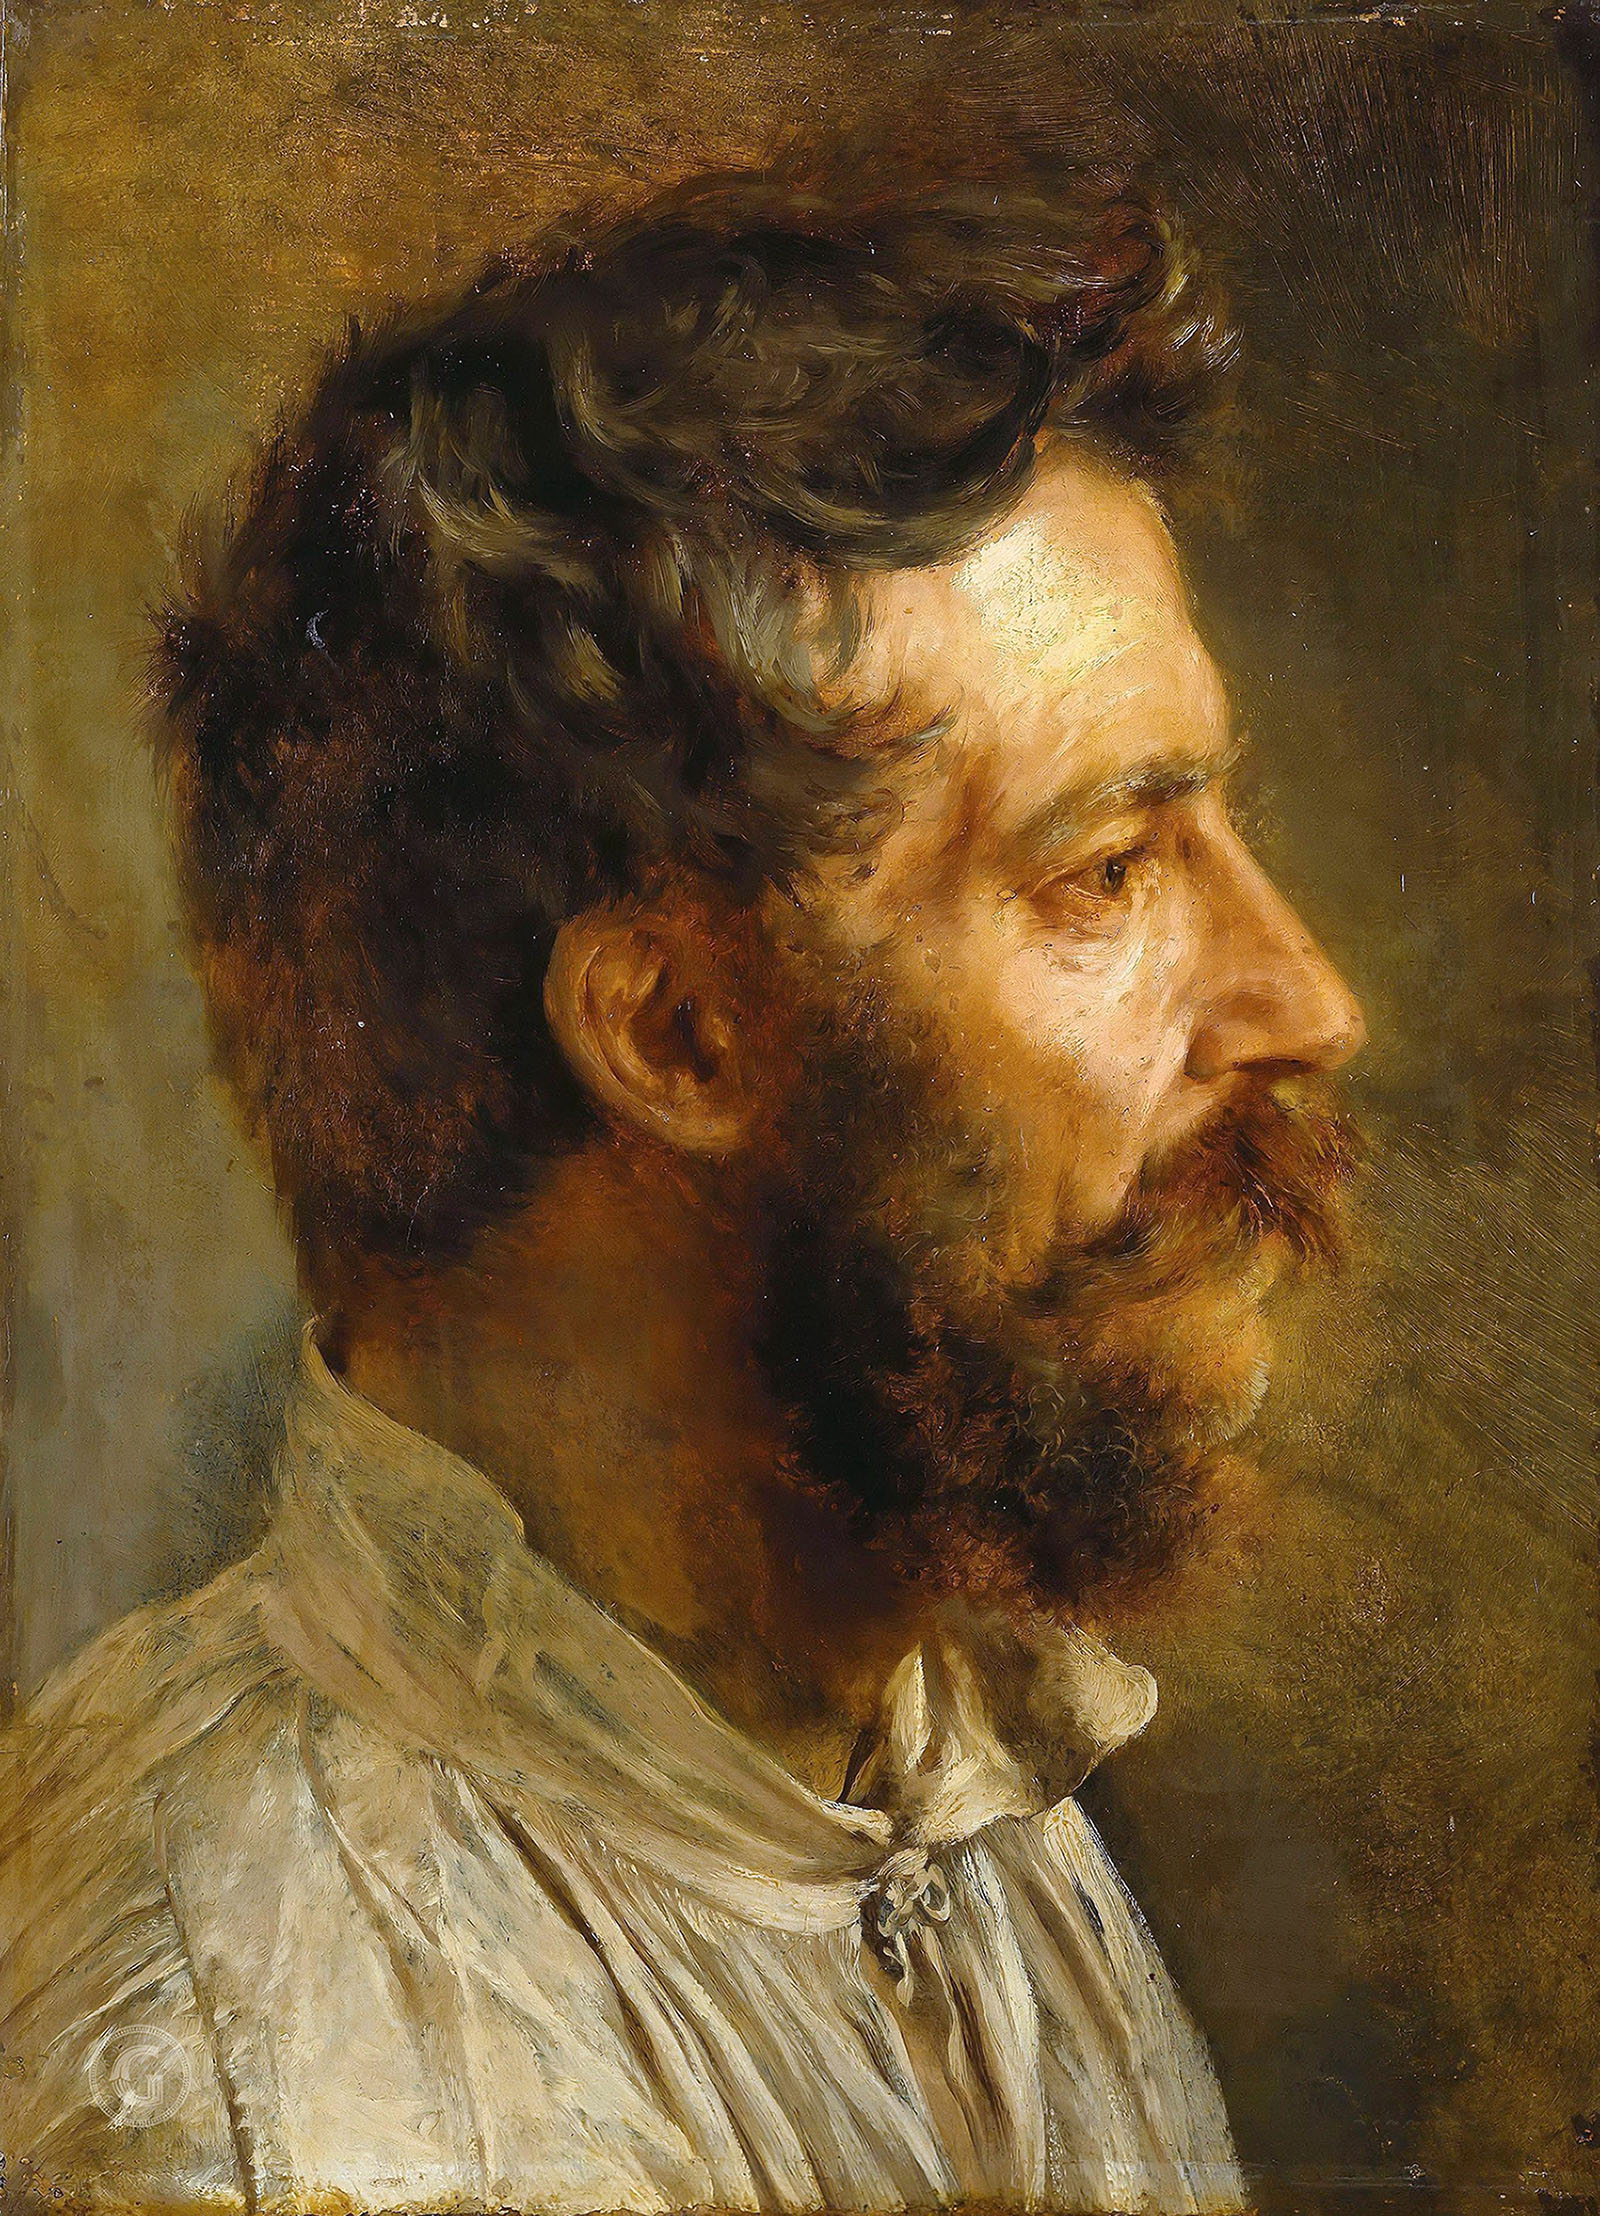 Адольф Менцель. "Голова бородатого мужчины в профиль". 1844. Музей Берггрюна, Берлин.